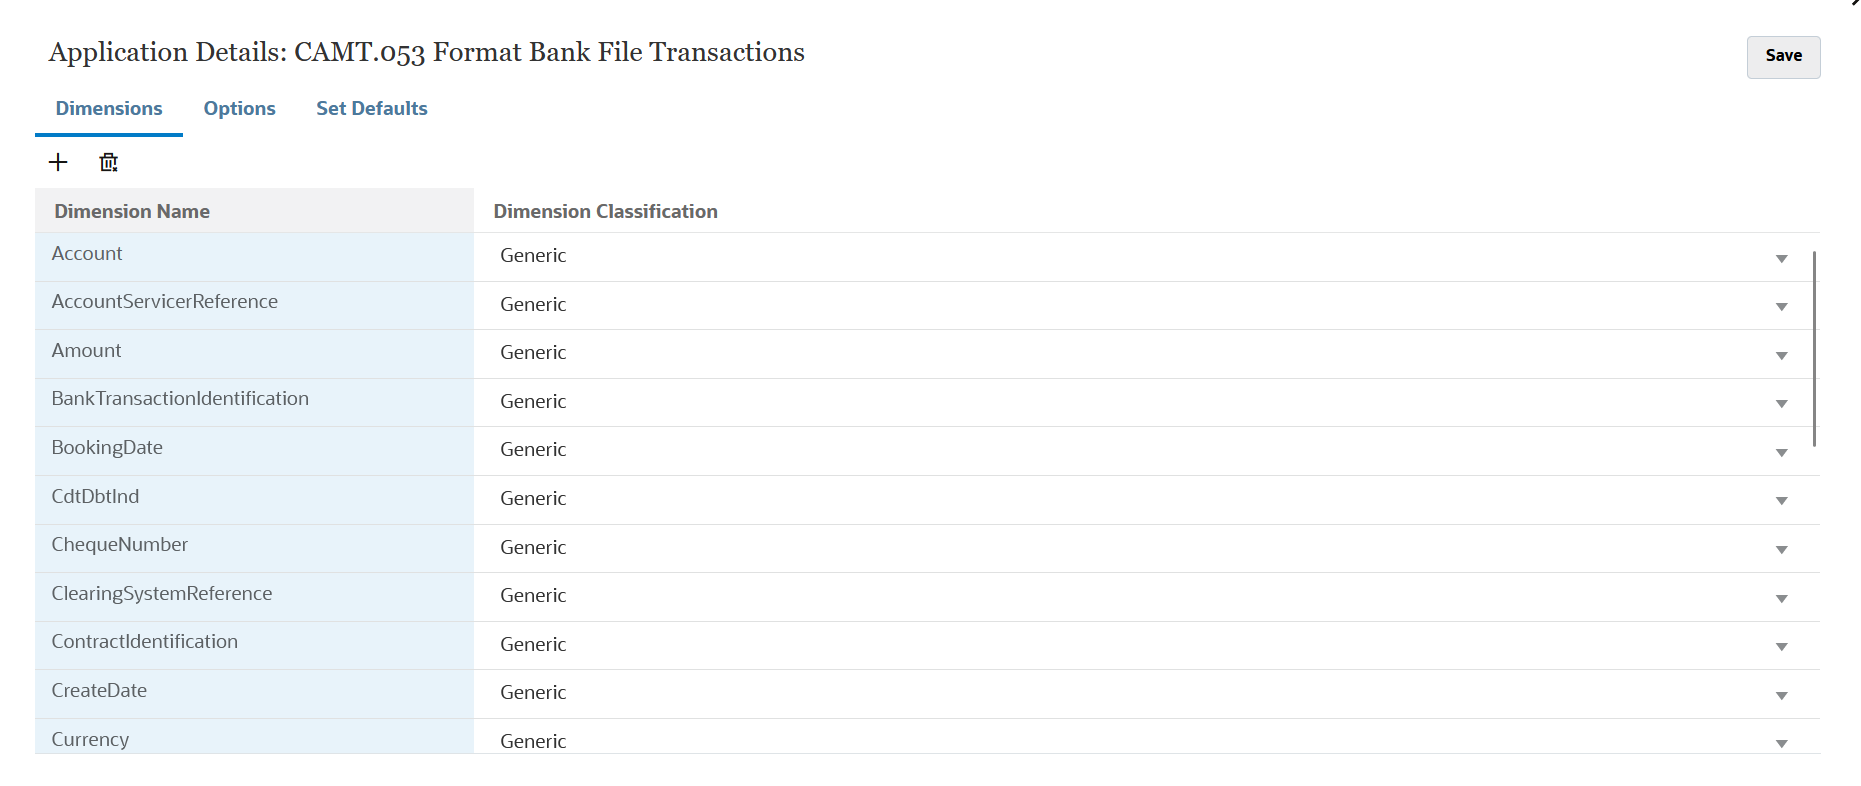 Immagine che mostra le dimensioni per un'applicazione transazioni file bancario formato CAMT.053.